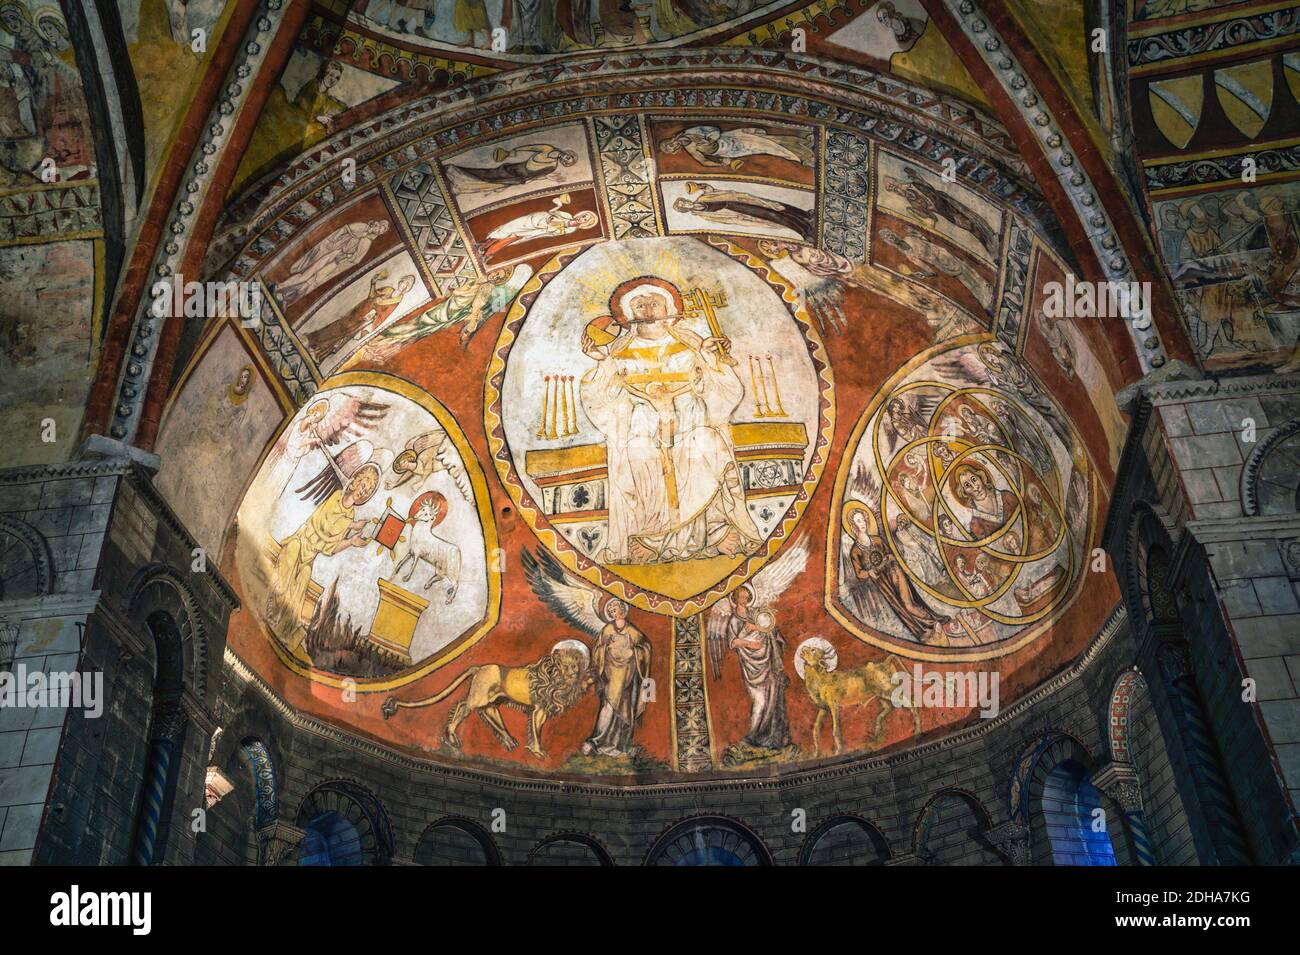 Saint-Macaire, département de Gironde, Aquitaine, France. Peintures murales romanes au plafond de l'église Saint-Sauveur. Banque D'Images